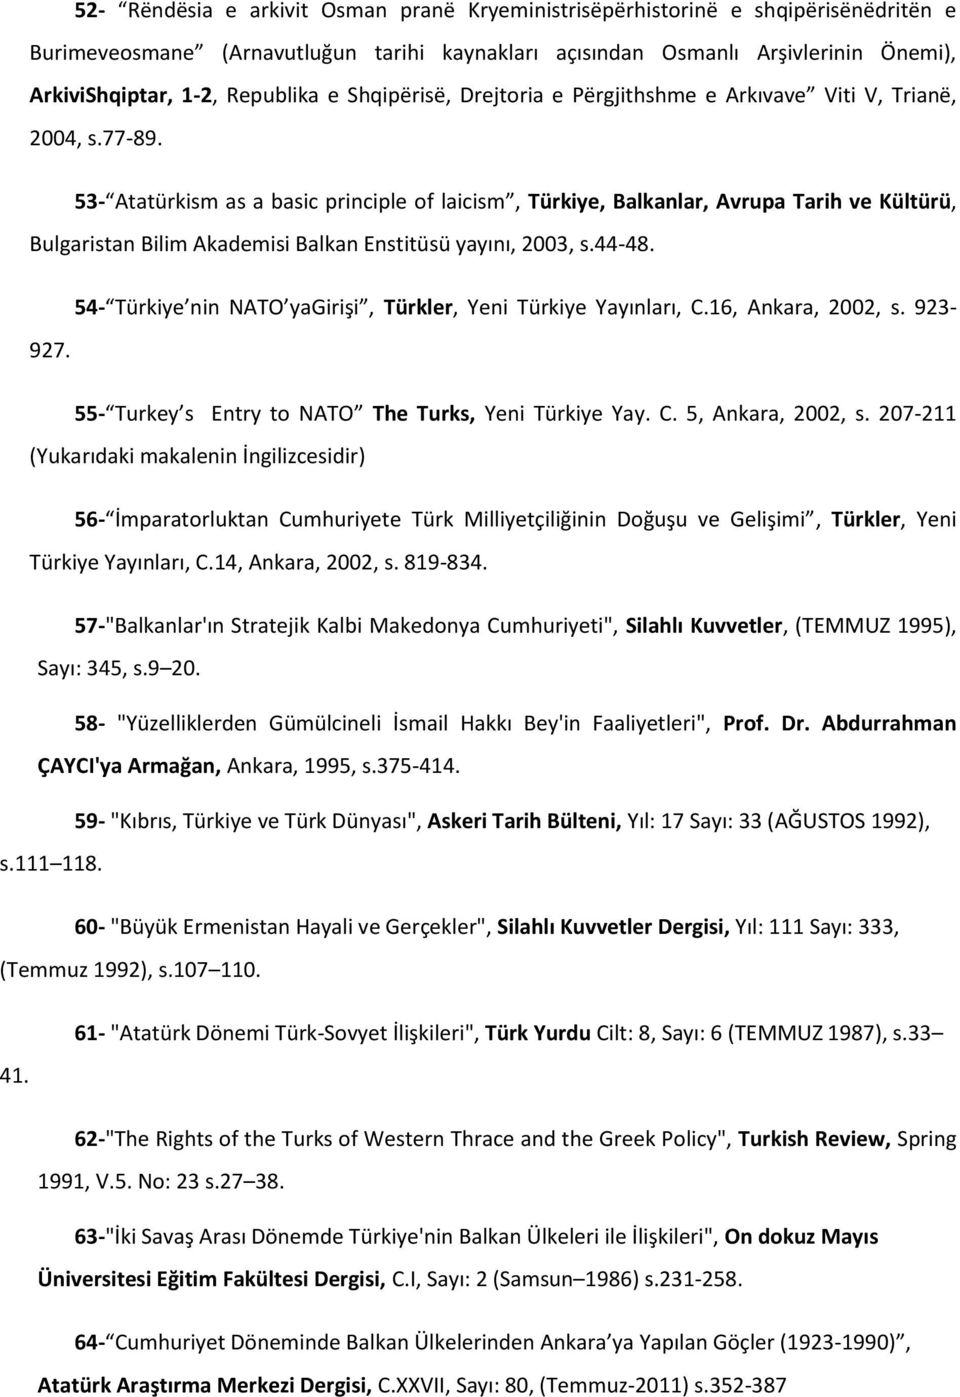 53- Atatürkism as a basic principle of laicism, Türkiye, Balkanlar, Avrupa Tarih ve Kültürü, Bulgaristan Bilim Akademisi Balkan Enstitüsü yayını, 2003, s.44-48.